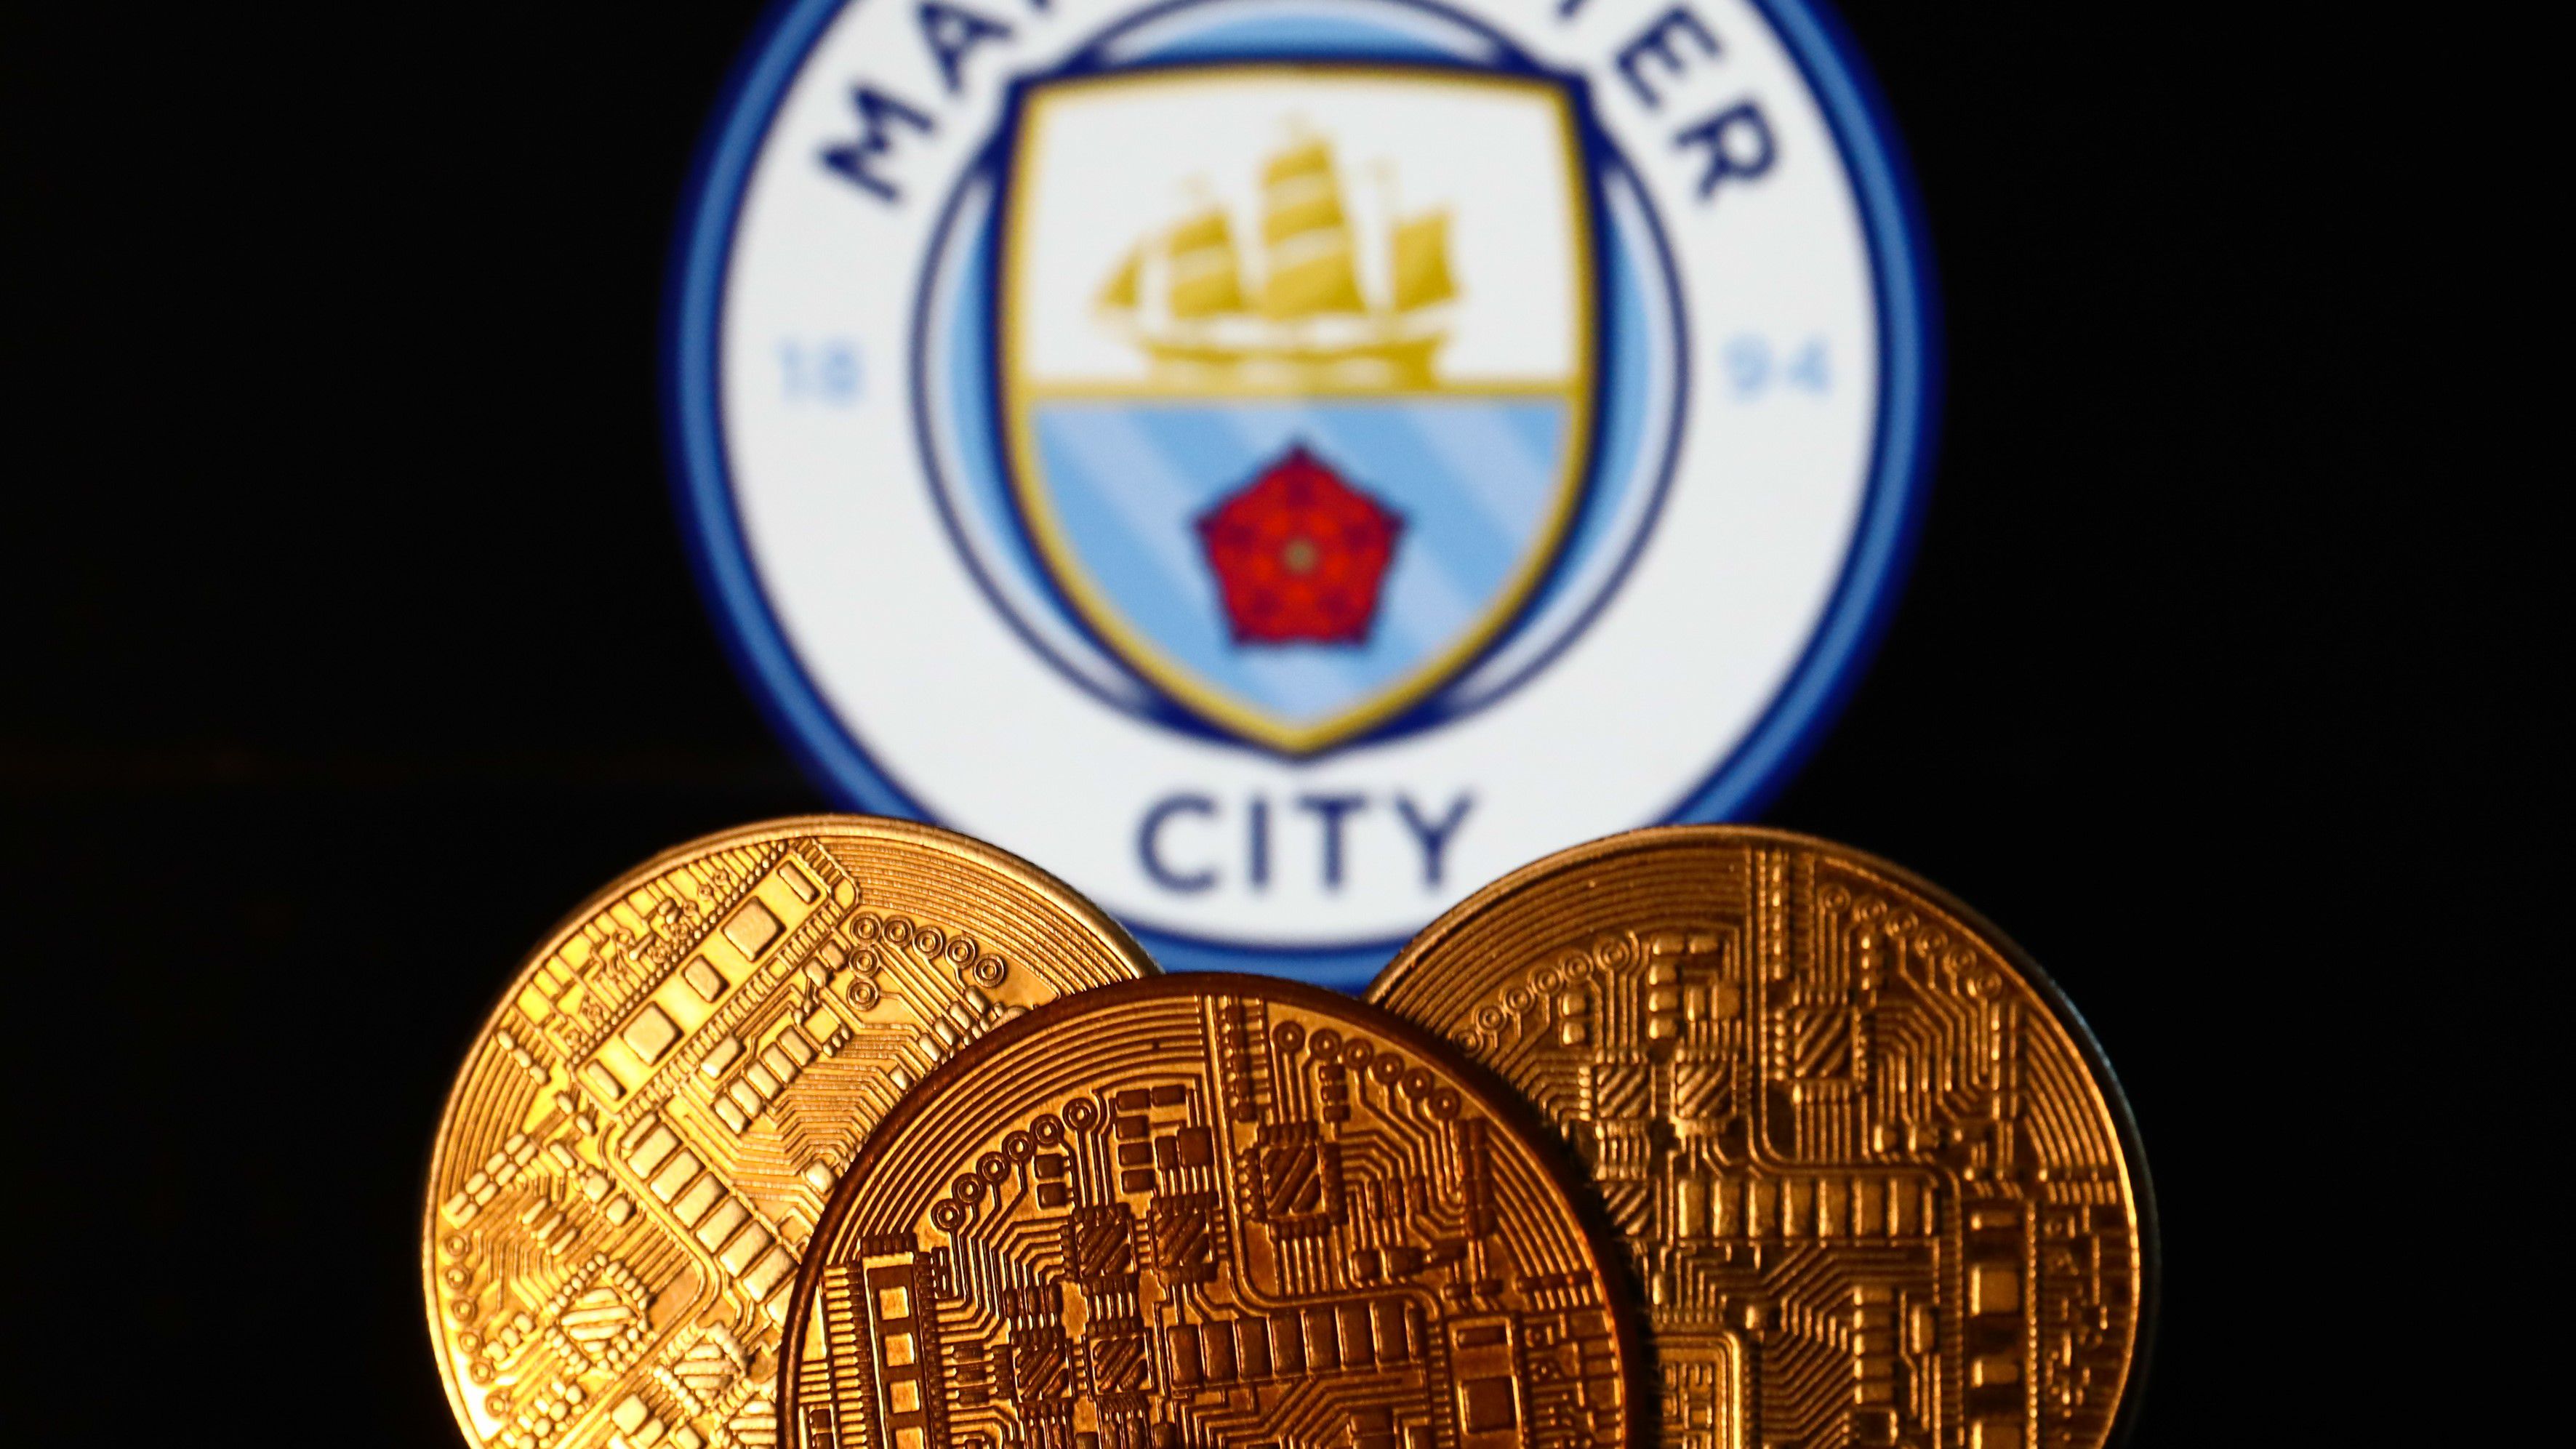 Nincs meglepetés: a Manchester City továbbra is viszi a prímet, ha pénzről van szó...